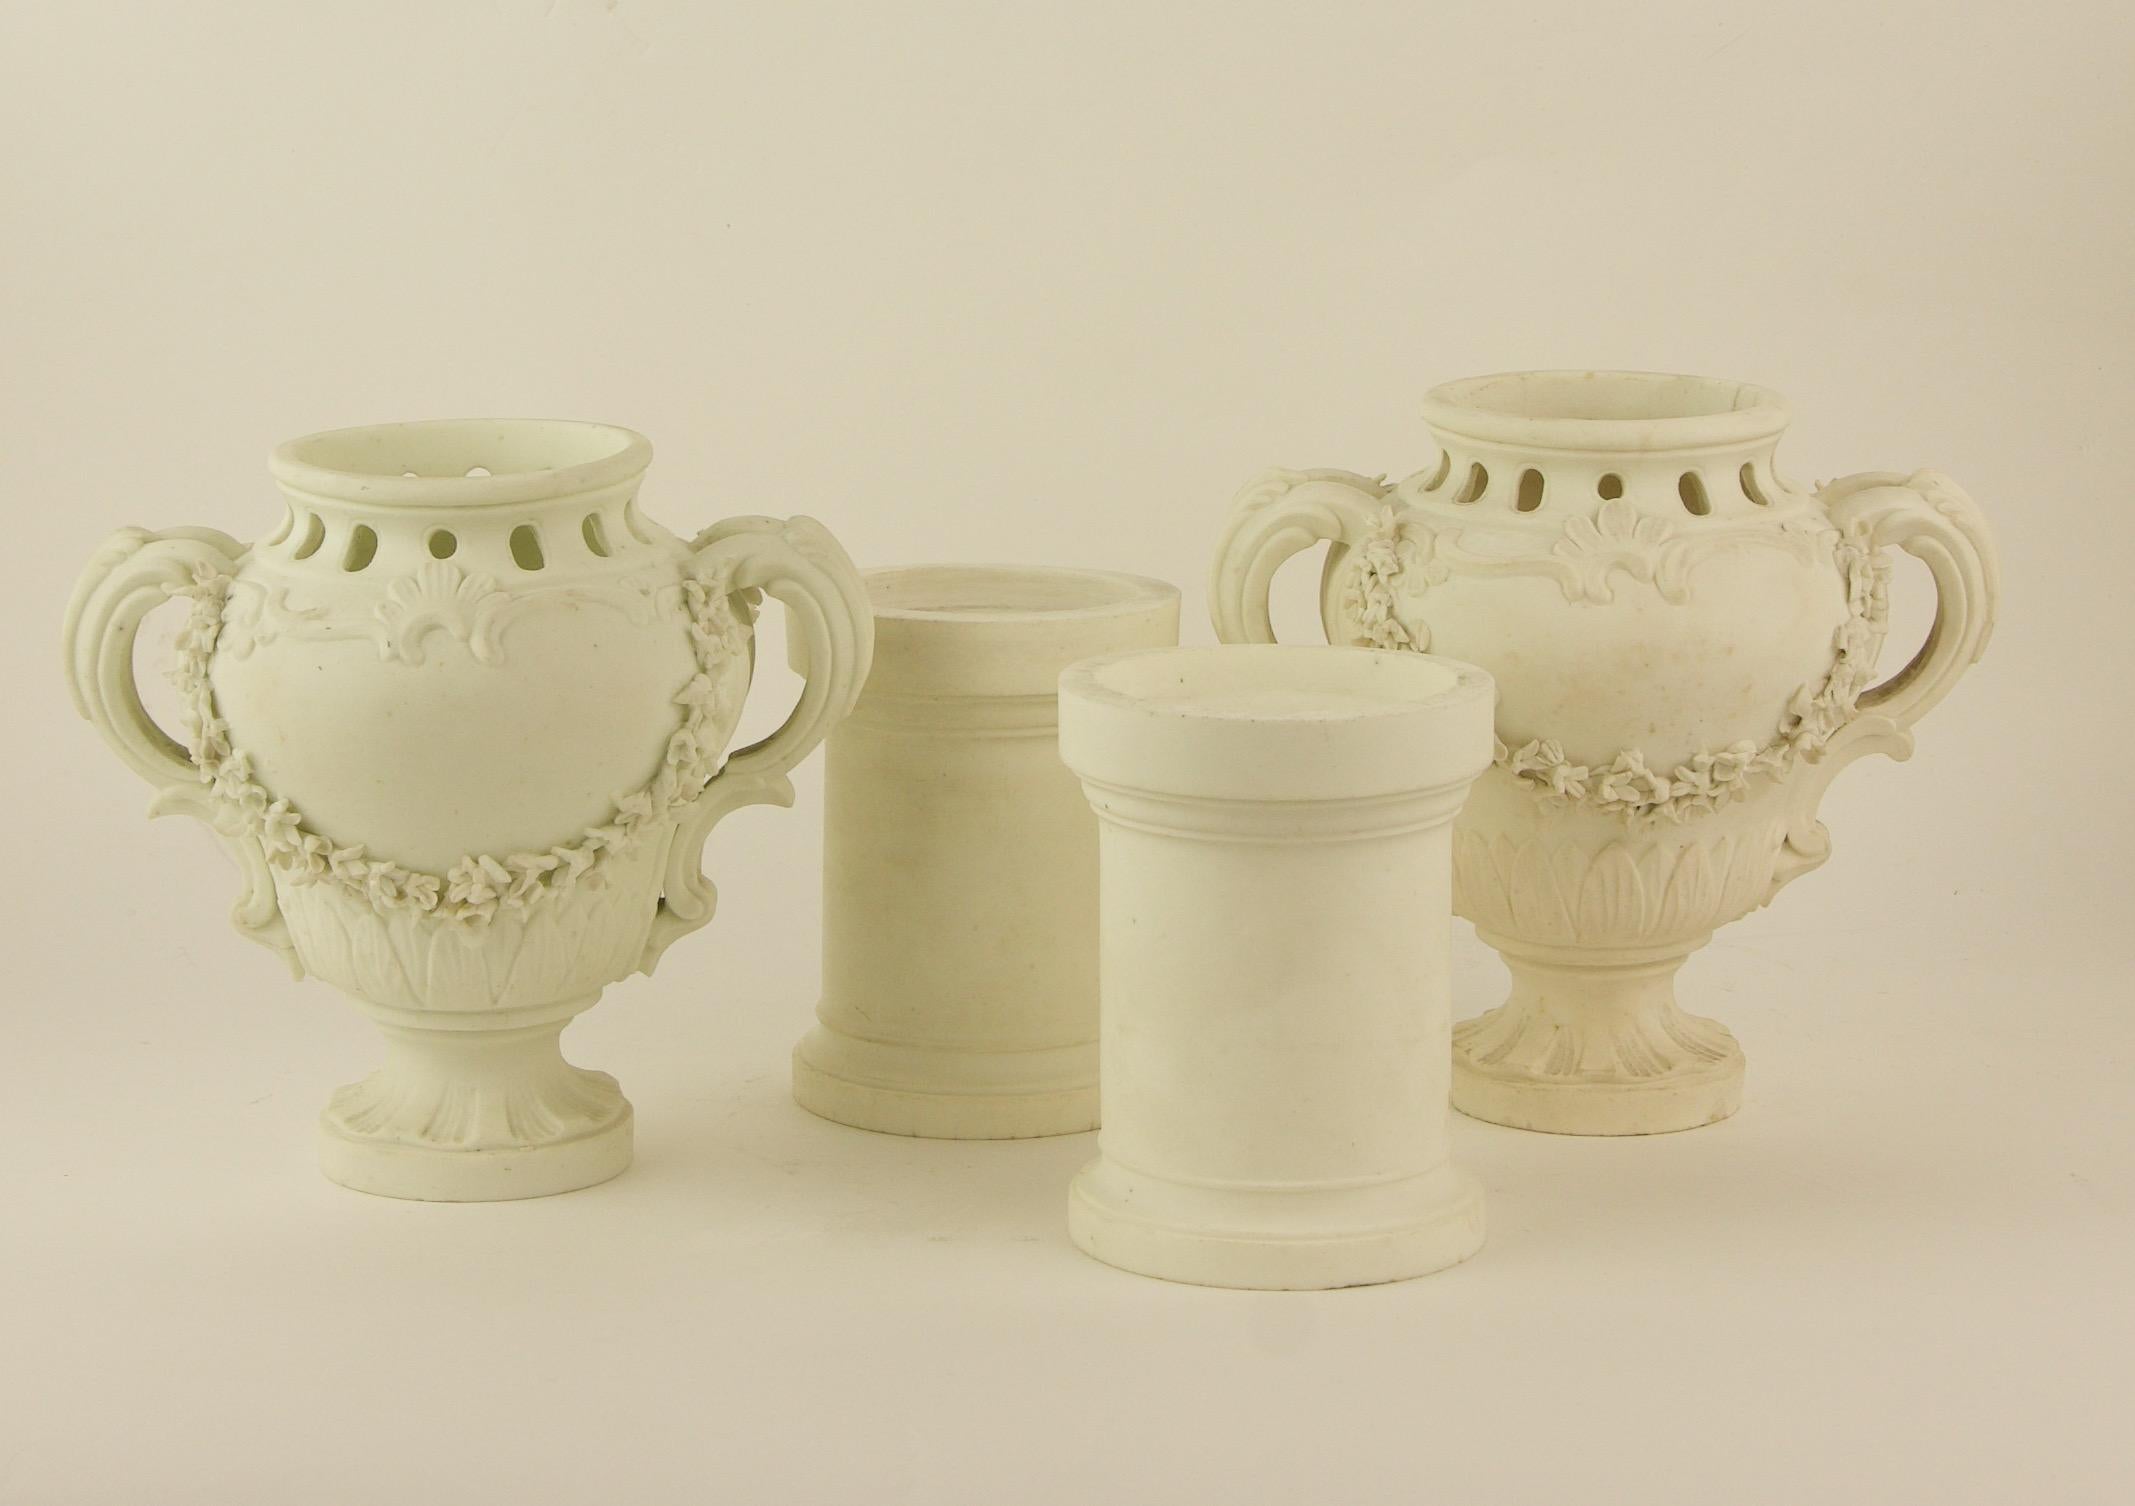 Paire de vases et piédestaux décoratifs Louis XV en biscuit de porcelaine, milieu du 18e siècle

Sur un pied rond et cannelé, un vase en forme de poire avec deux anses latérales à volute, le bord supérieur présentant un ajourage en forme de